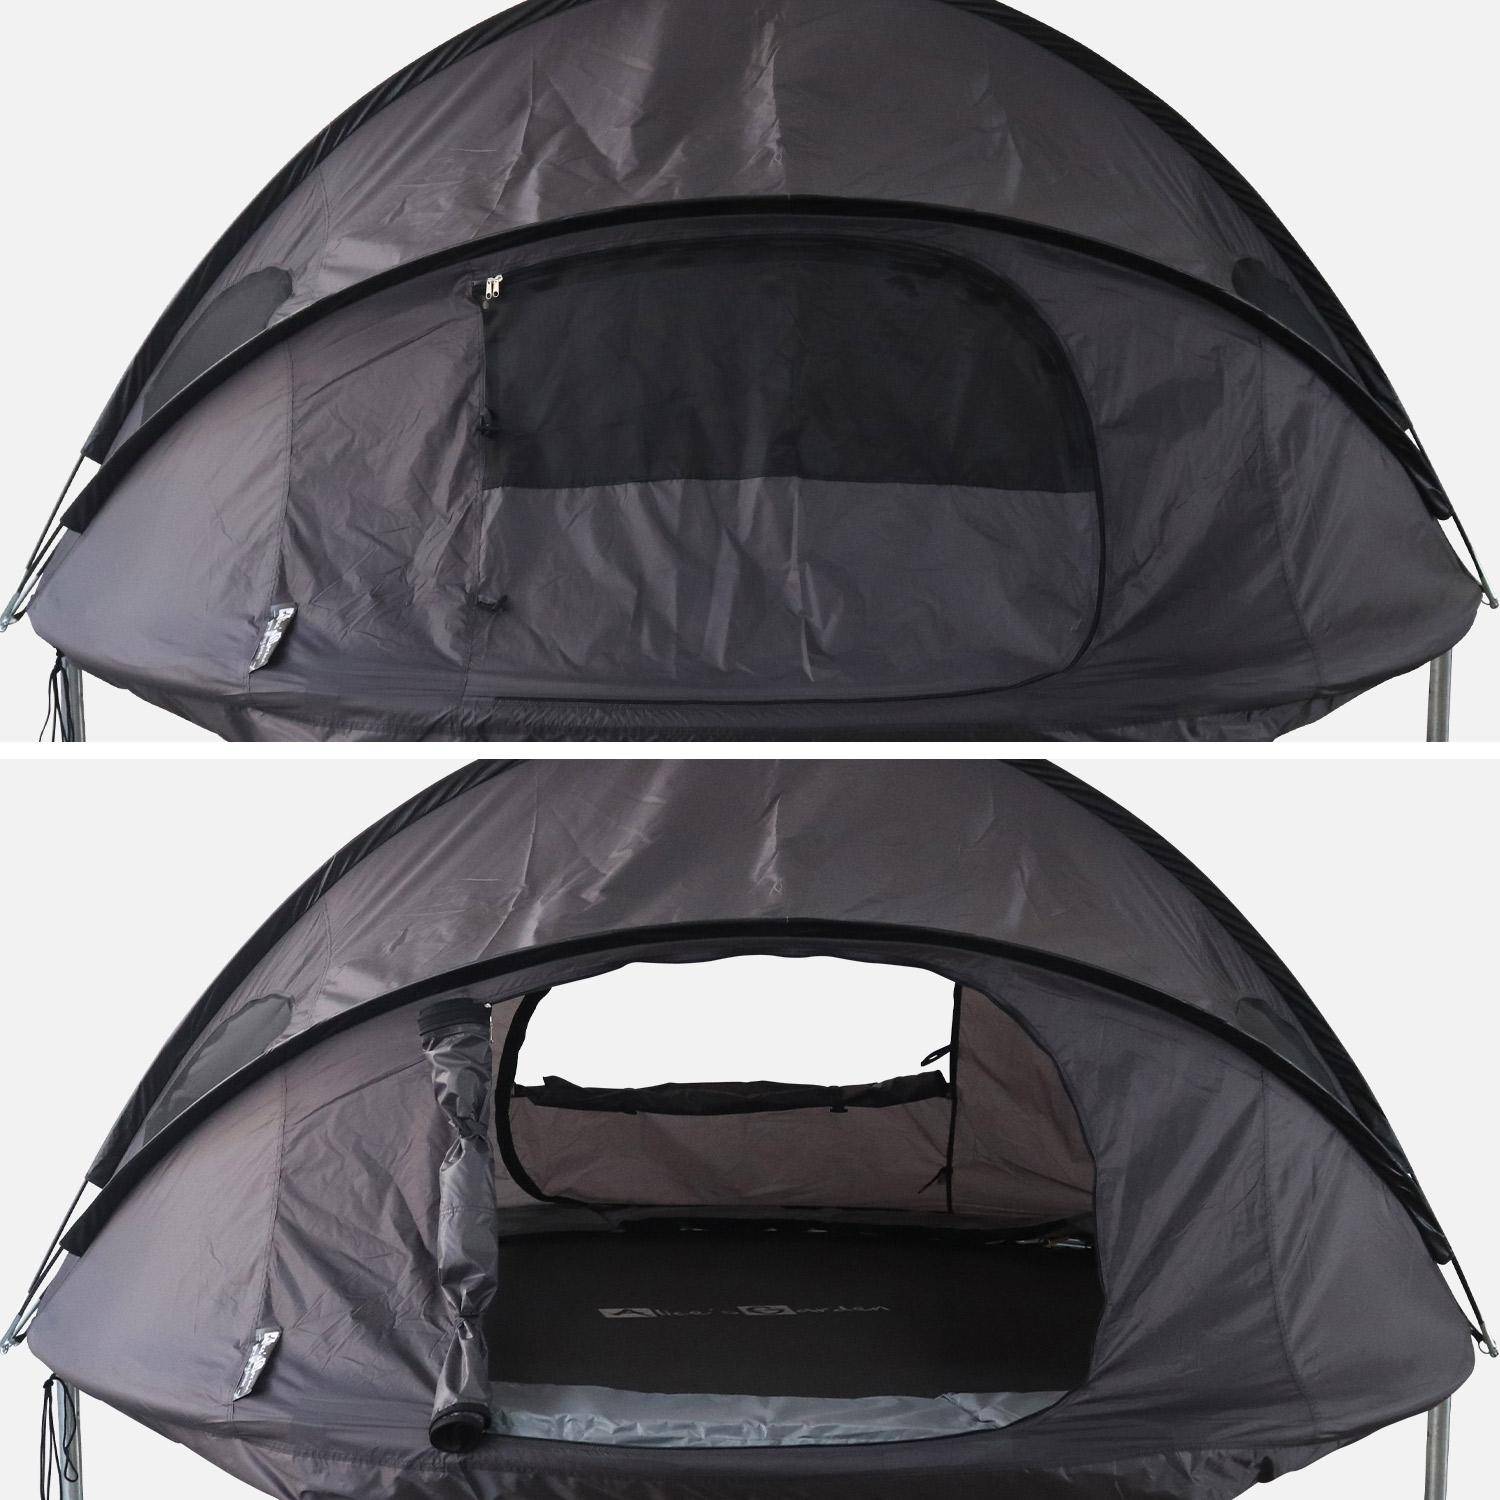 Carpa para cama elástica Ø250cm (red interior y exterior) poliéster, tratamiento UV, 2 puertas, 4 ventanas y bolsa de transporte Photo3